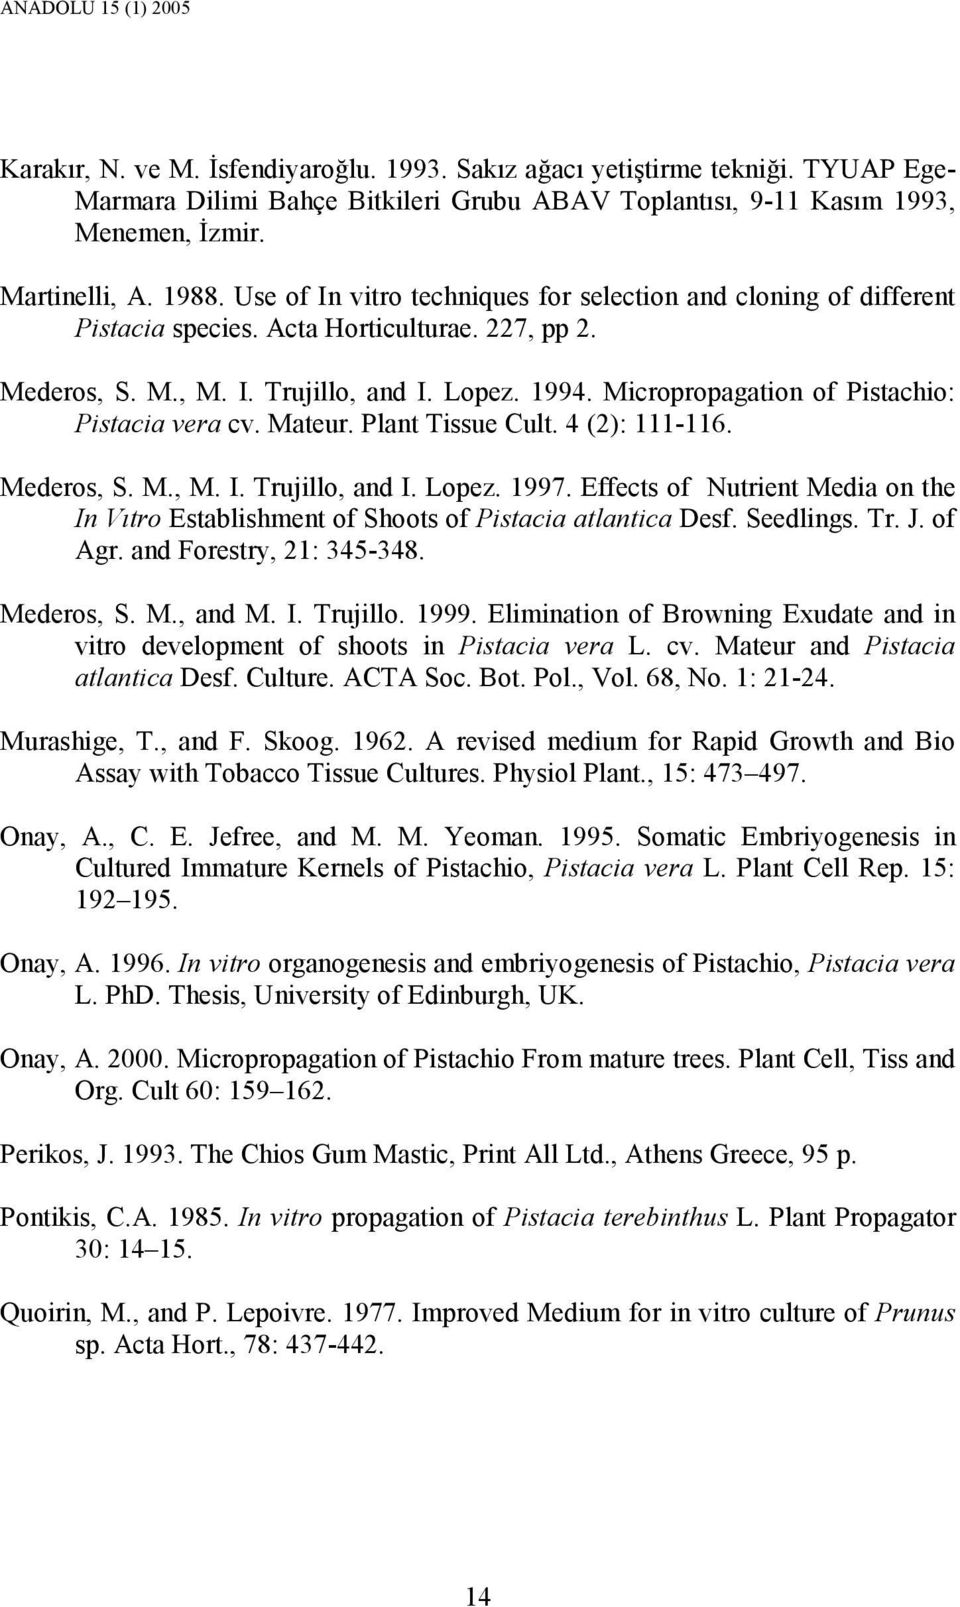 Micropropagation of Pistachio: Pistacia vera cv. Mateur. Plant Tissue Cult. 4 (2): 111-116. Mederos, S. M., M. I. Trujillo, and I. Lopez. 1997.